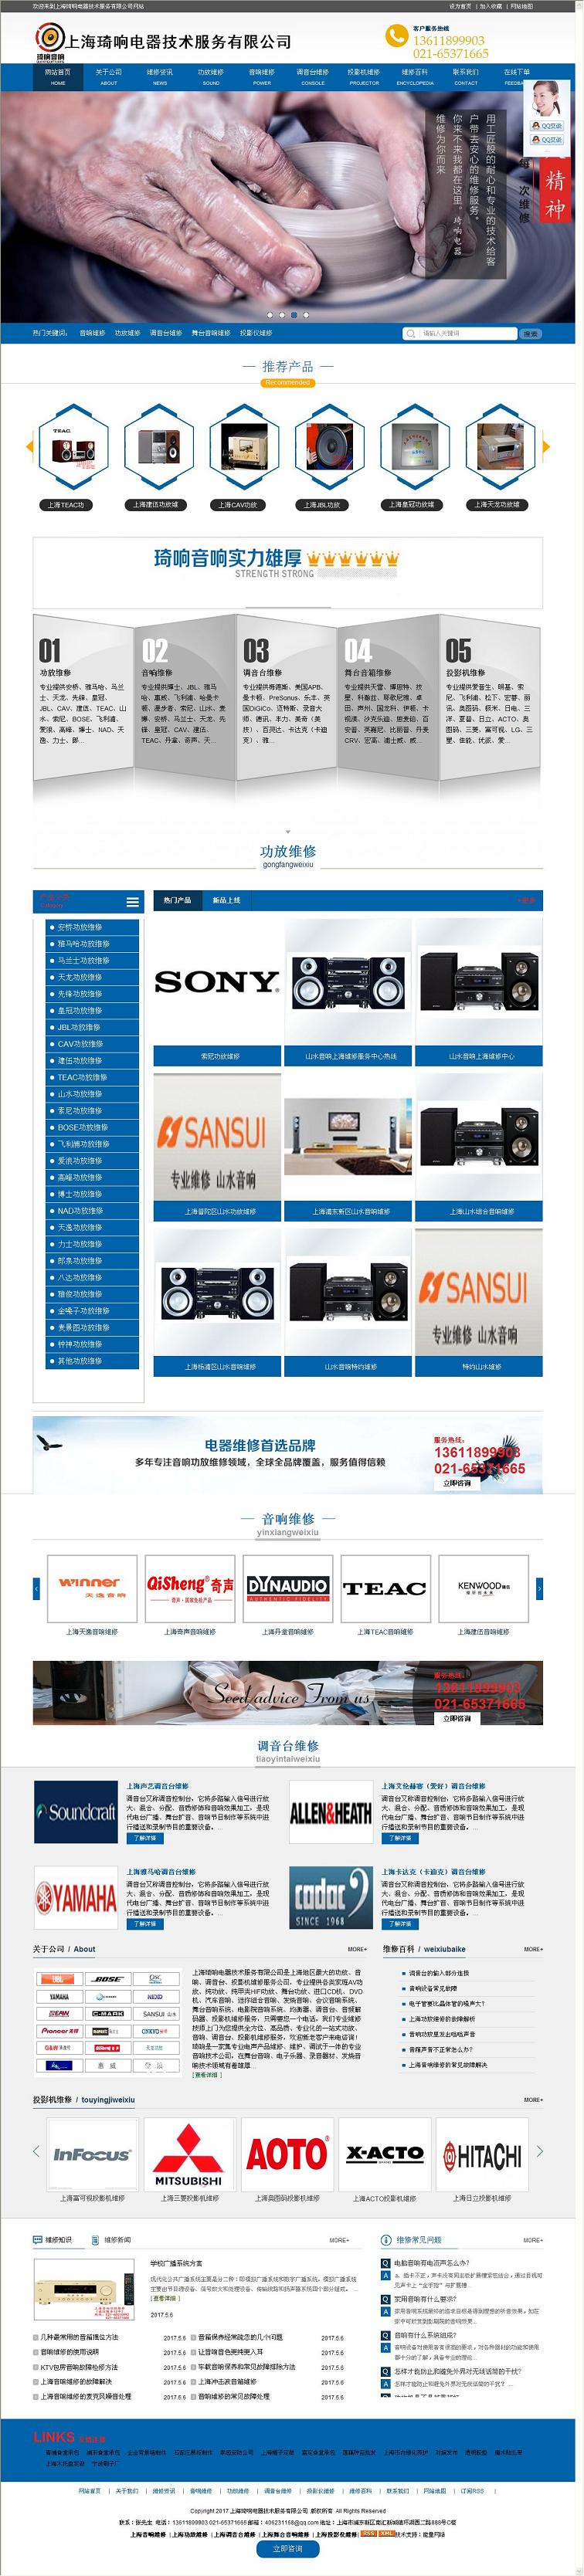 wap69上海琦响电器技术服务有限公司